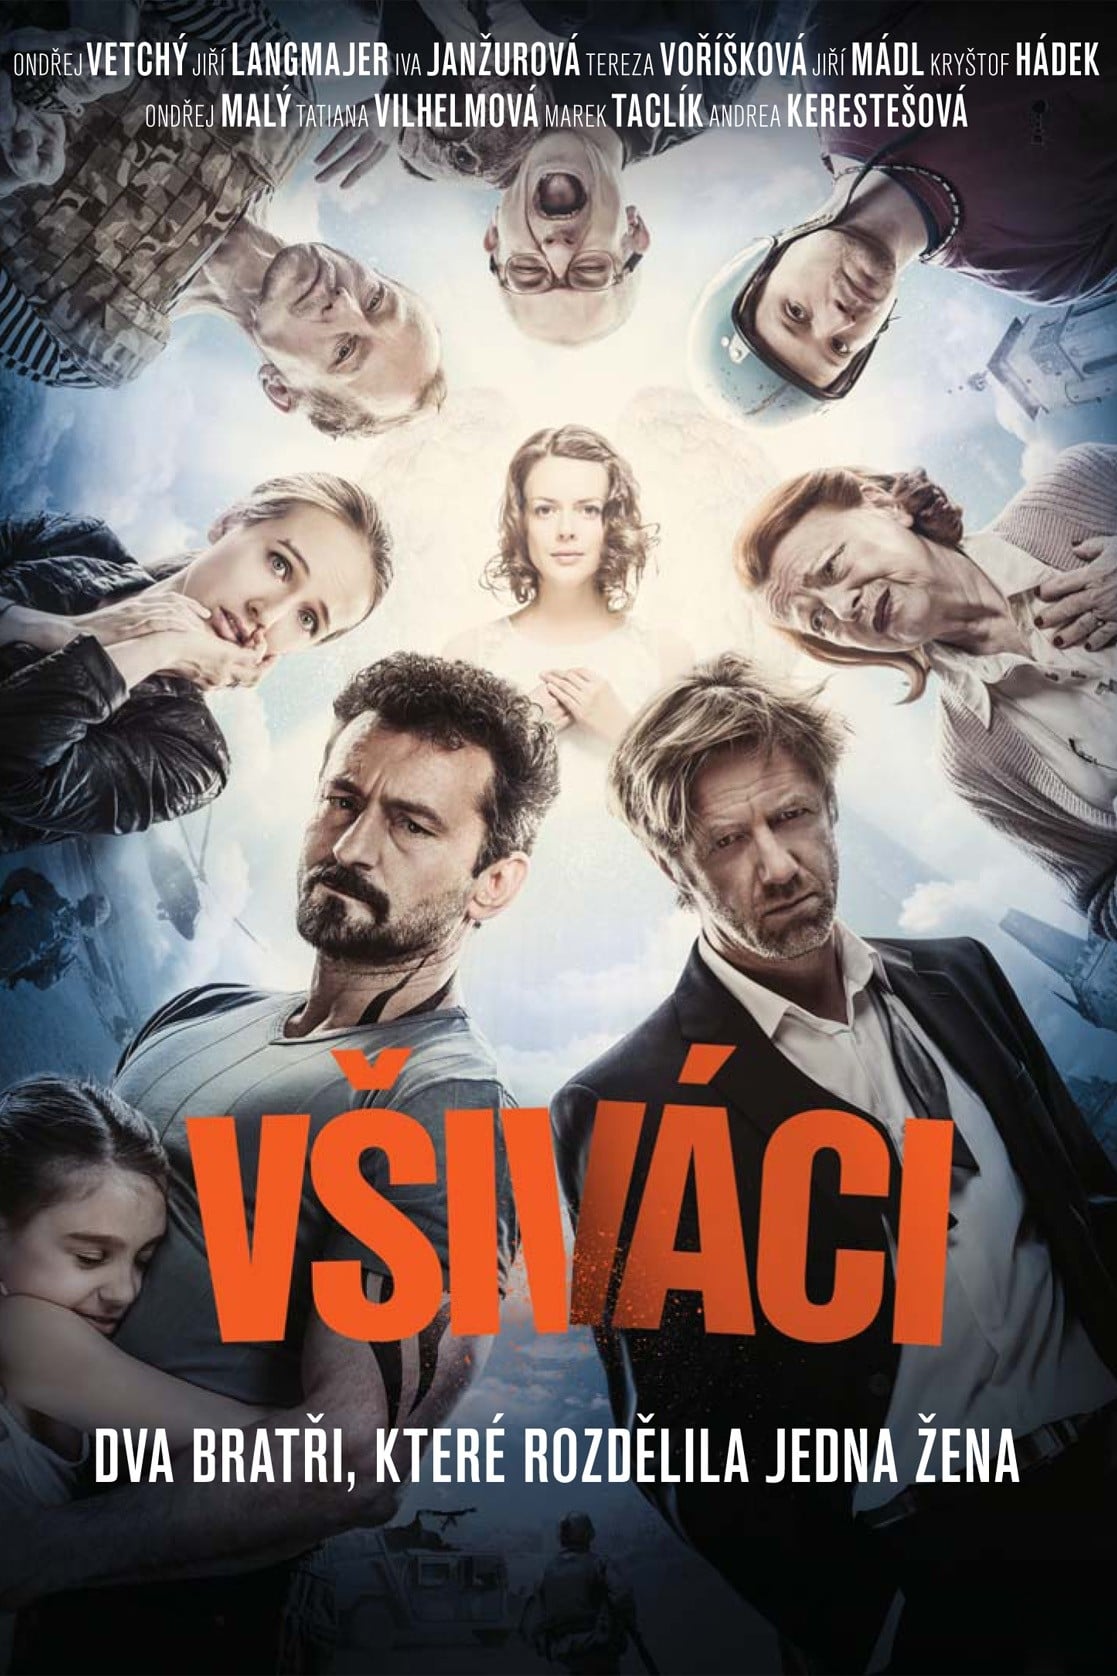 постер Vsivaci